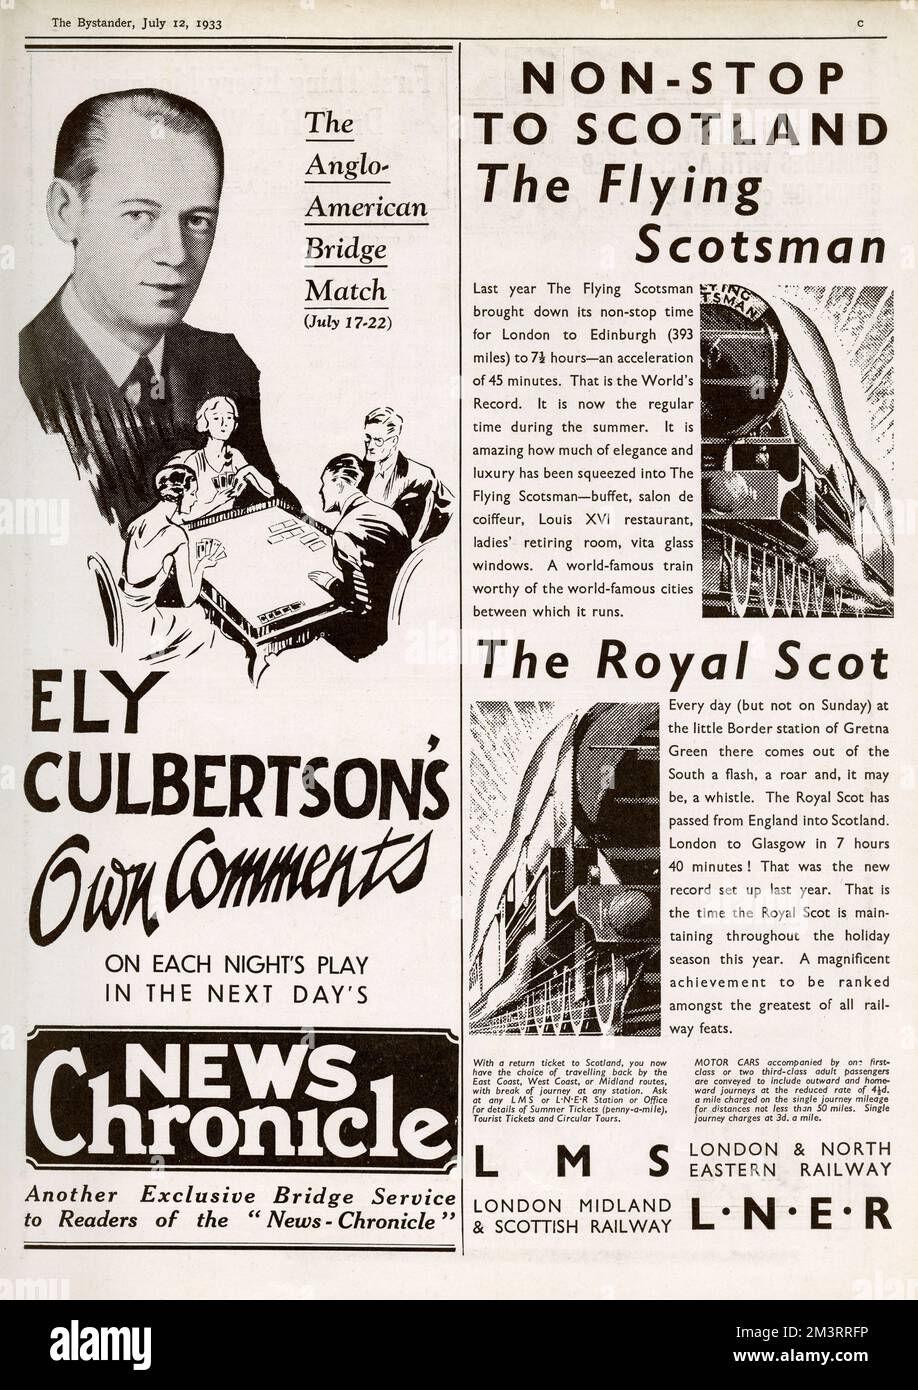 Page de publicités dans le spectateur, y compris pour le match du pont anglo-américain avec les propres commentaires d'Ely Cuthbertson dans la chronique de nouvelles le lendemain; et non-stop à l'Écosse sur le Scotsman volant et le Royal Scot trains pour LMS et LNER. Date: 1933 Banque D'Images